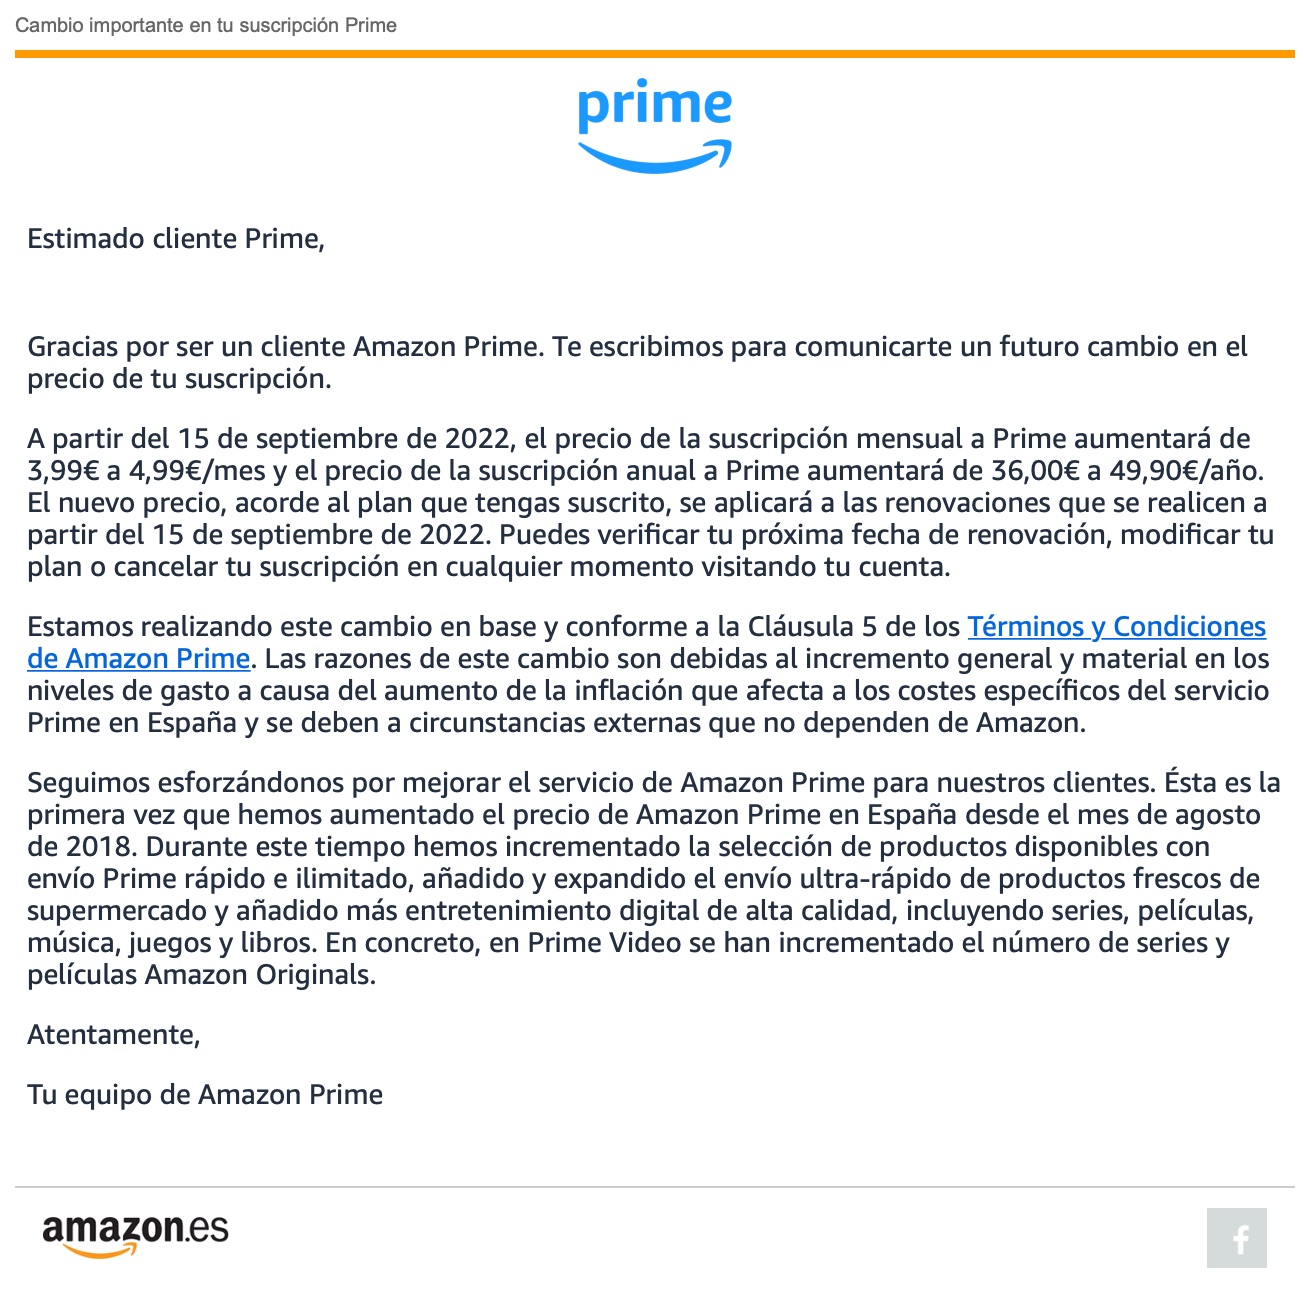 Email de Amazon Prime dando a conocer la subida de precio